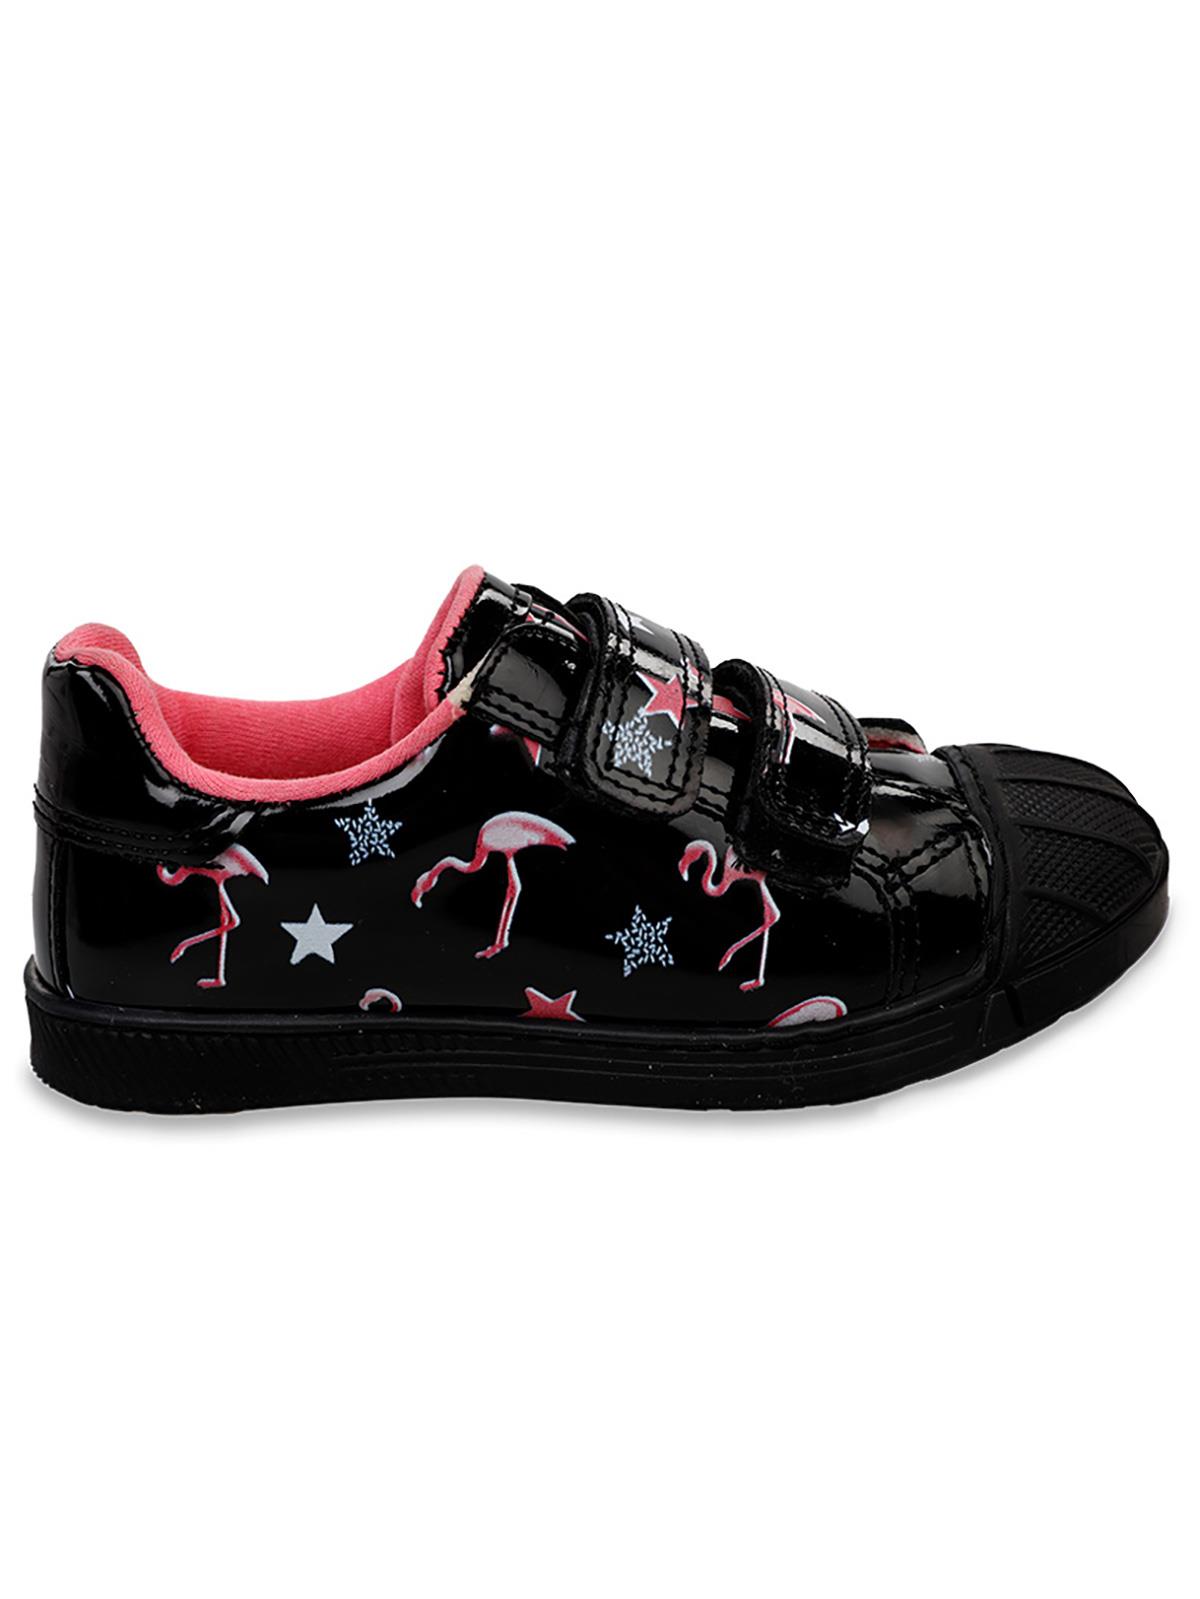 Harli Kız Çocuk Spor Ayakkabı 26-30 Numara  Siyah